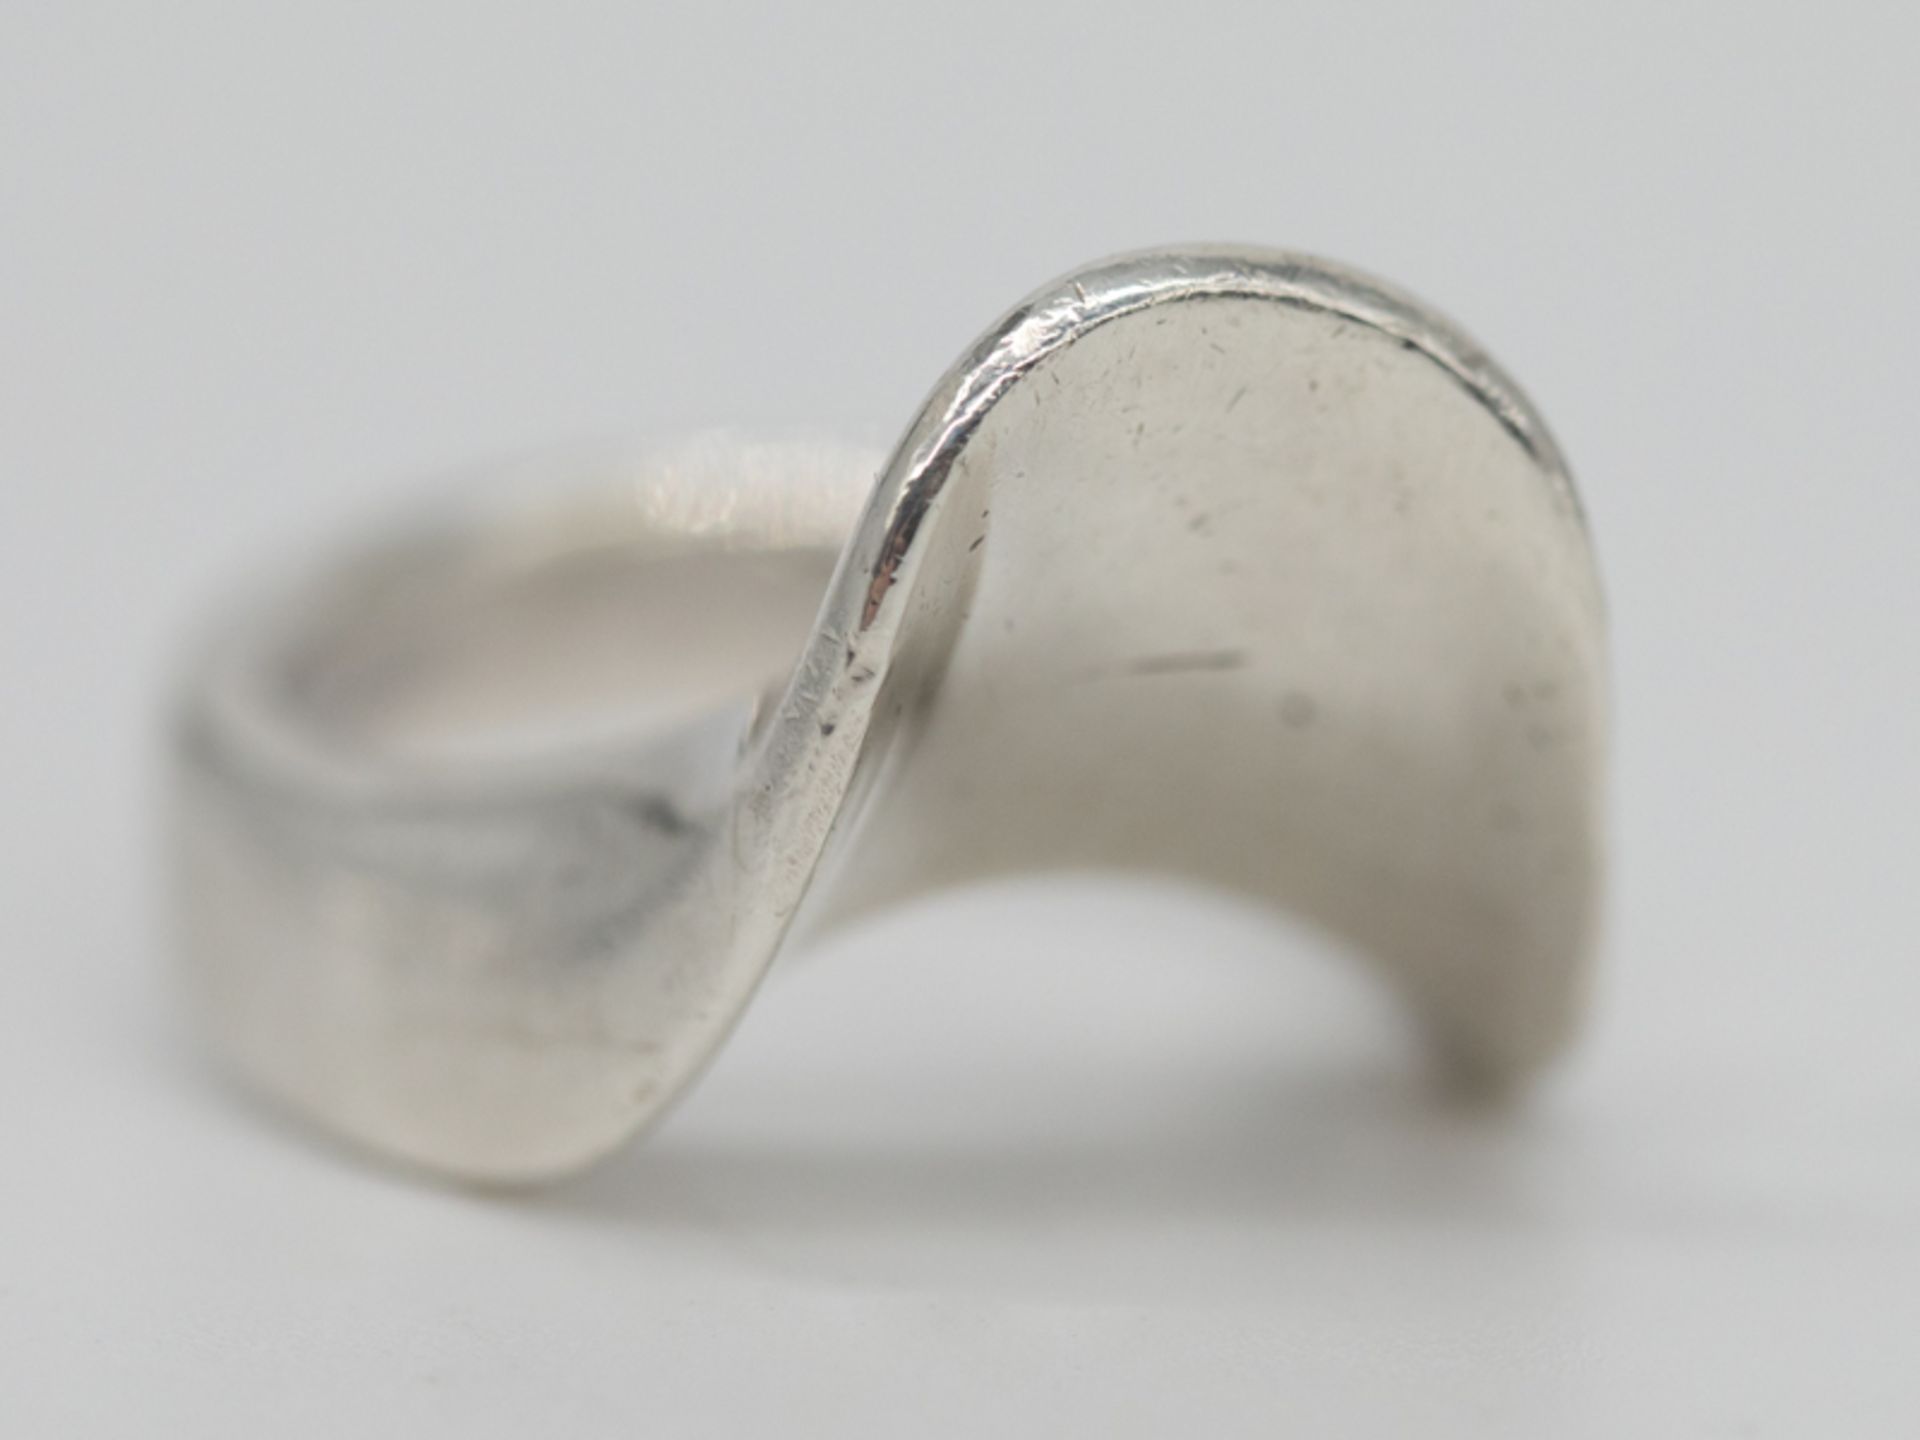 Ring in modernem Design, Alain Duclos, Frankreich, 1970er Jahre. 950/-Silber, ca. 10g; massiv - Bild 2 aus 6